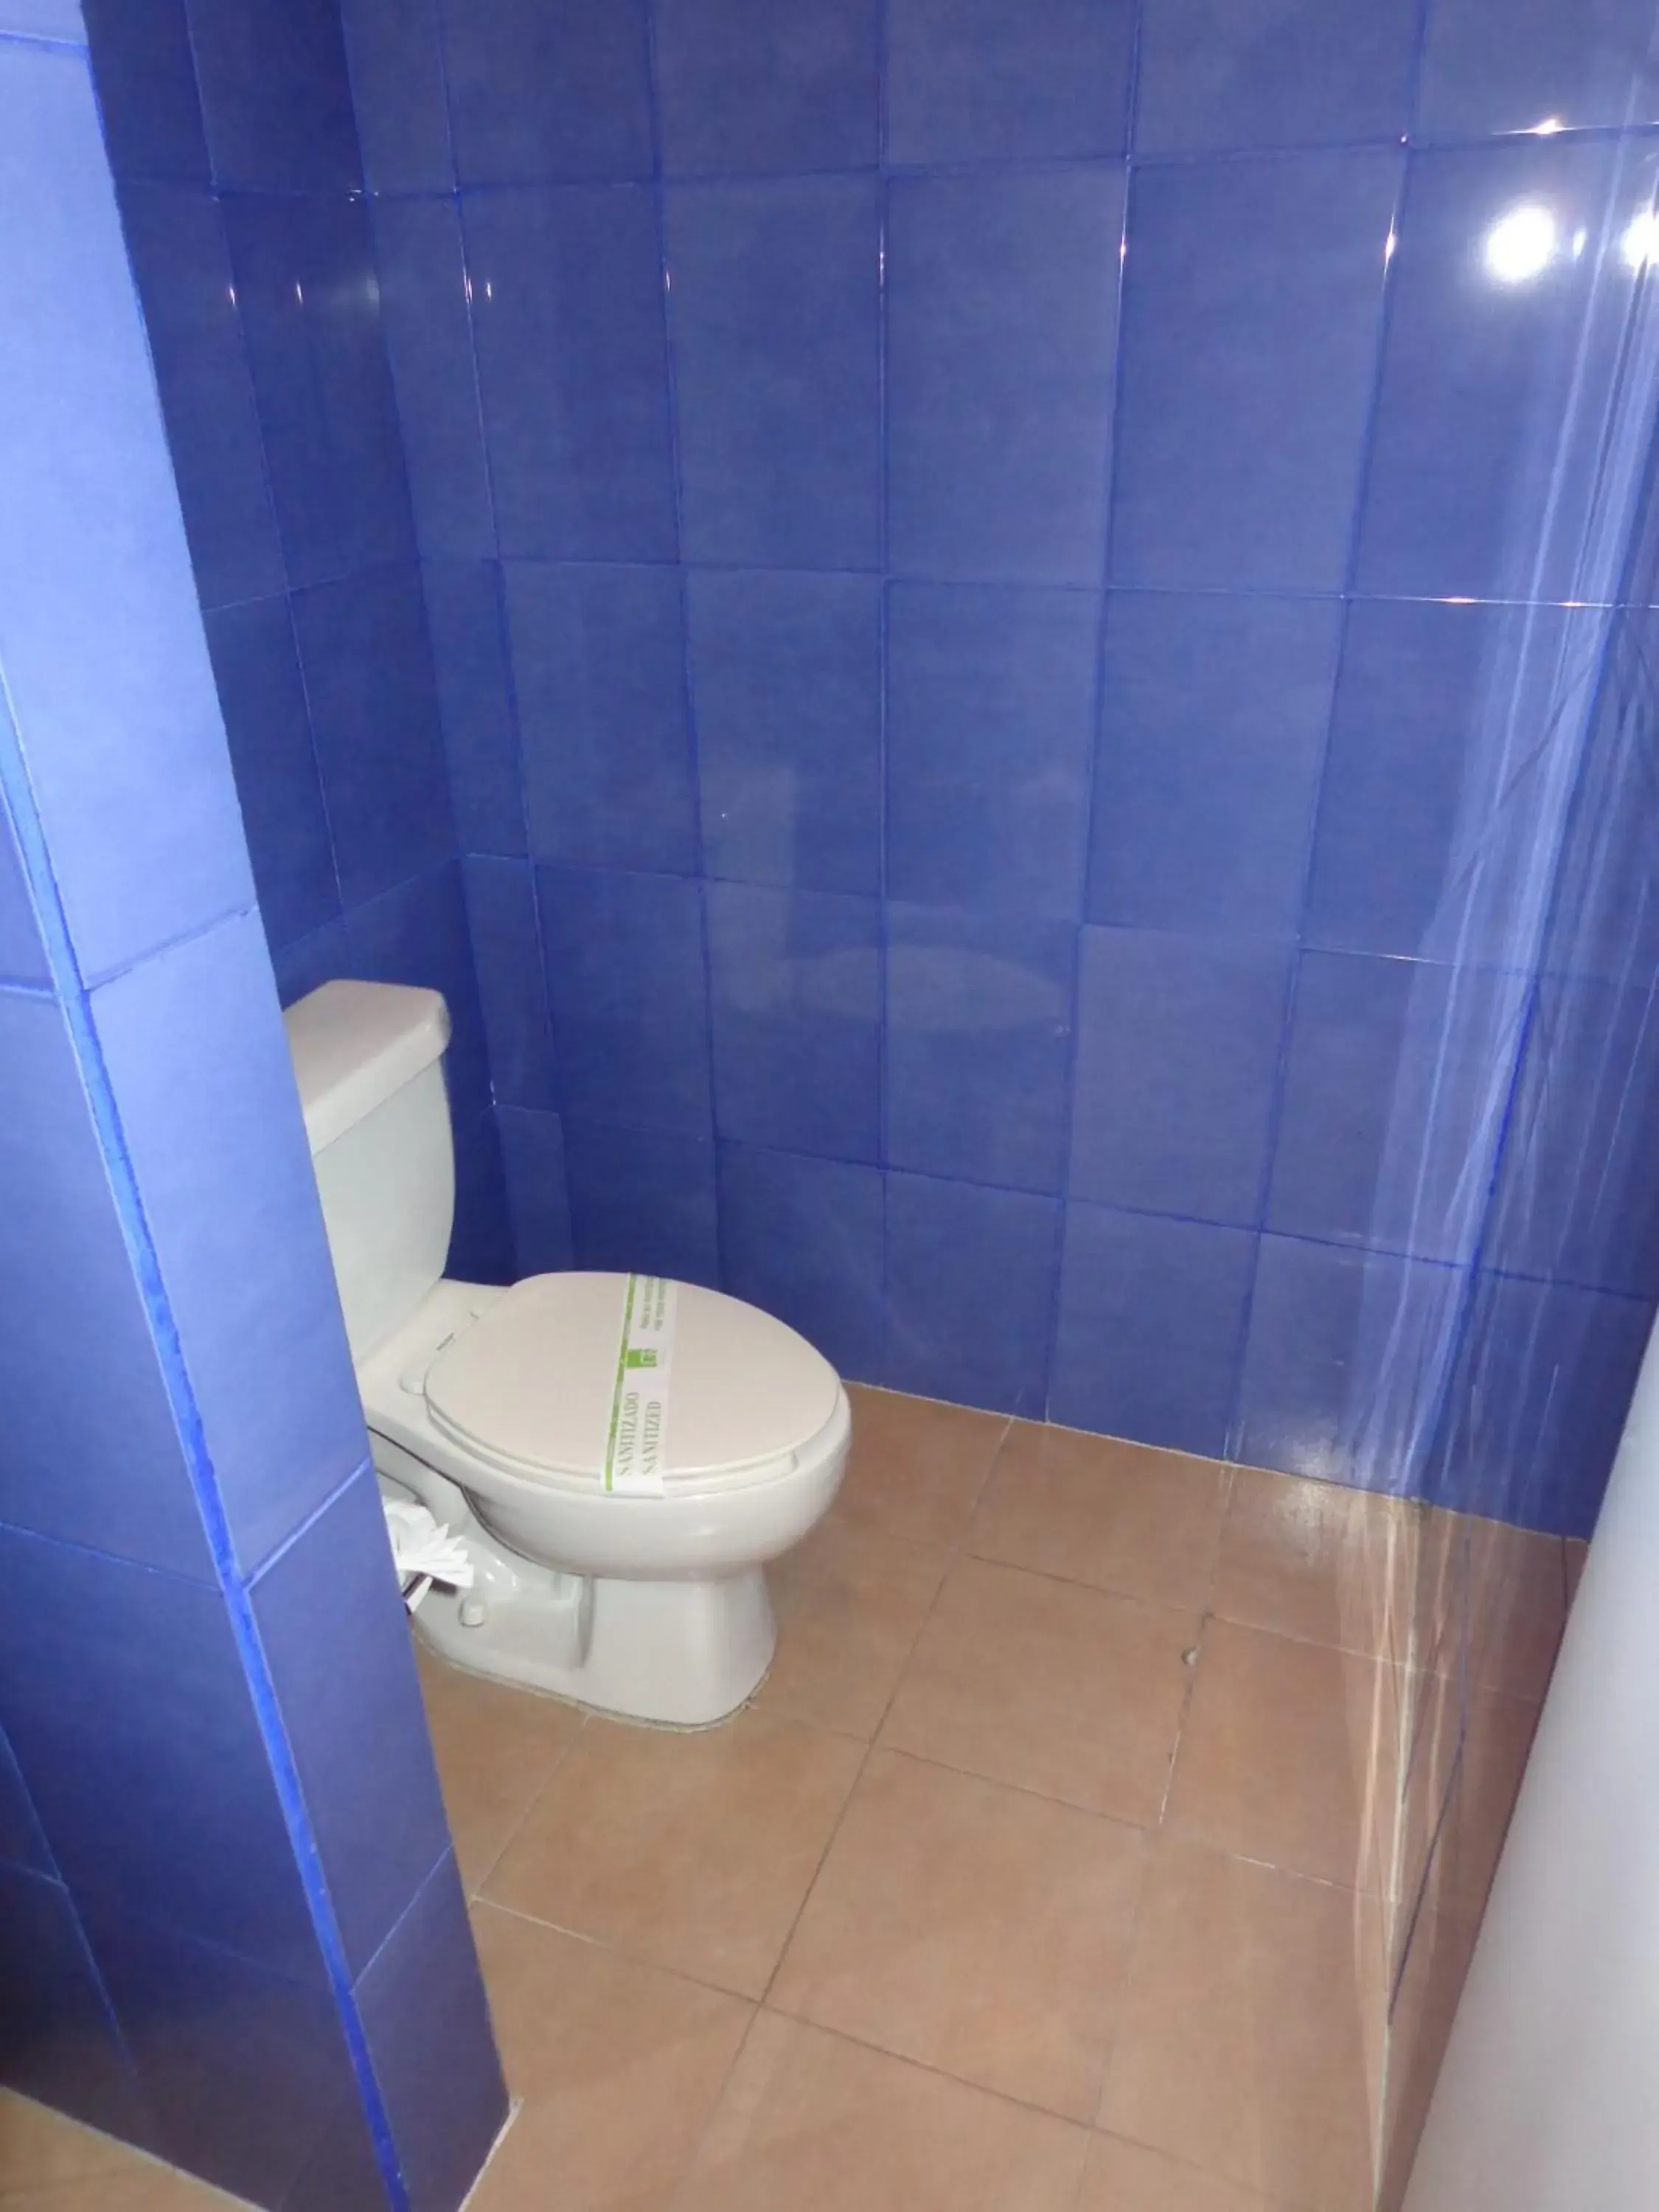 Bathroom in GS Cuernavaca